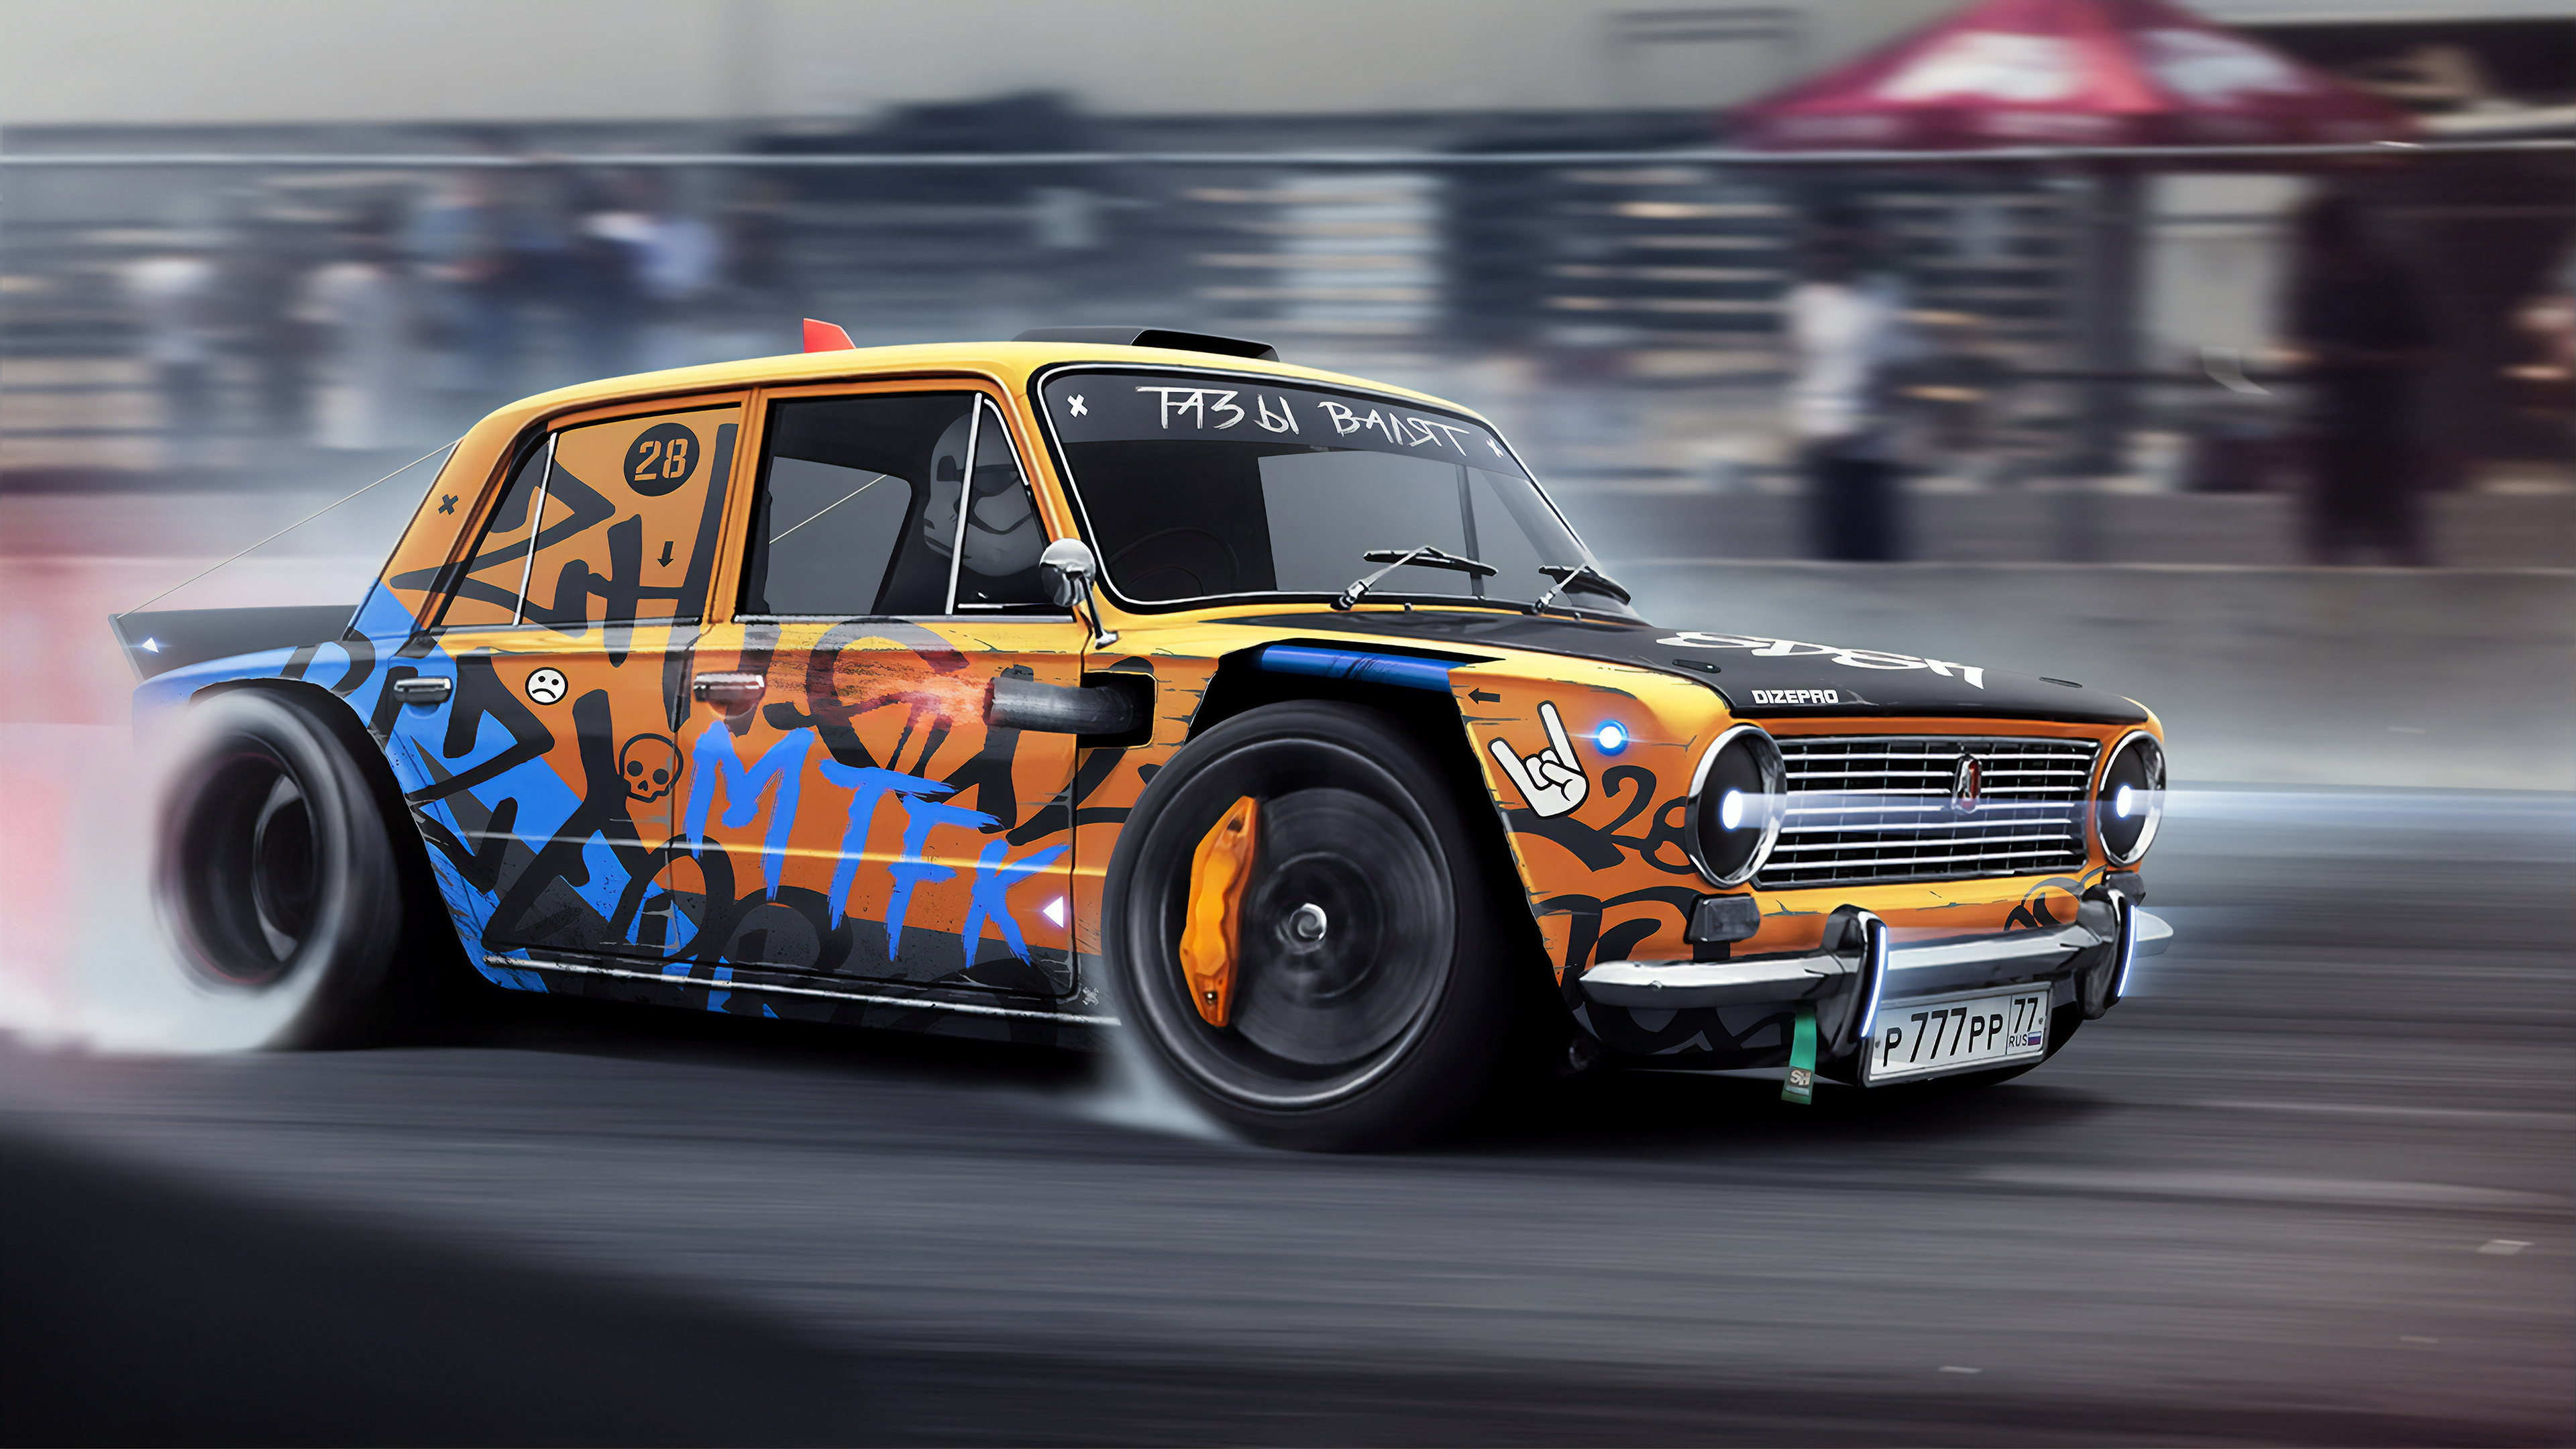 Car Race, Motorsport 4K Ultra HD wallpapers, 3840x2160 4K Desktop